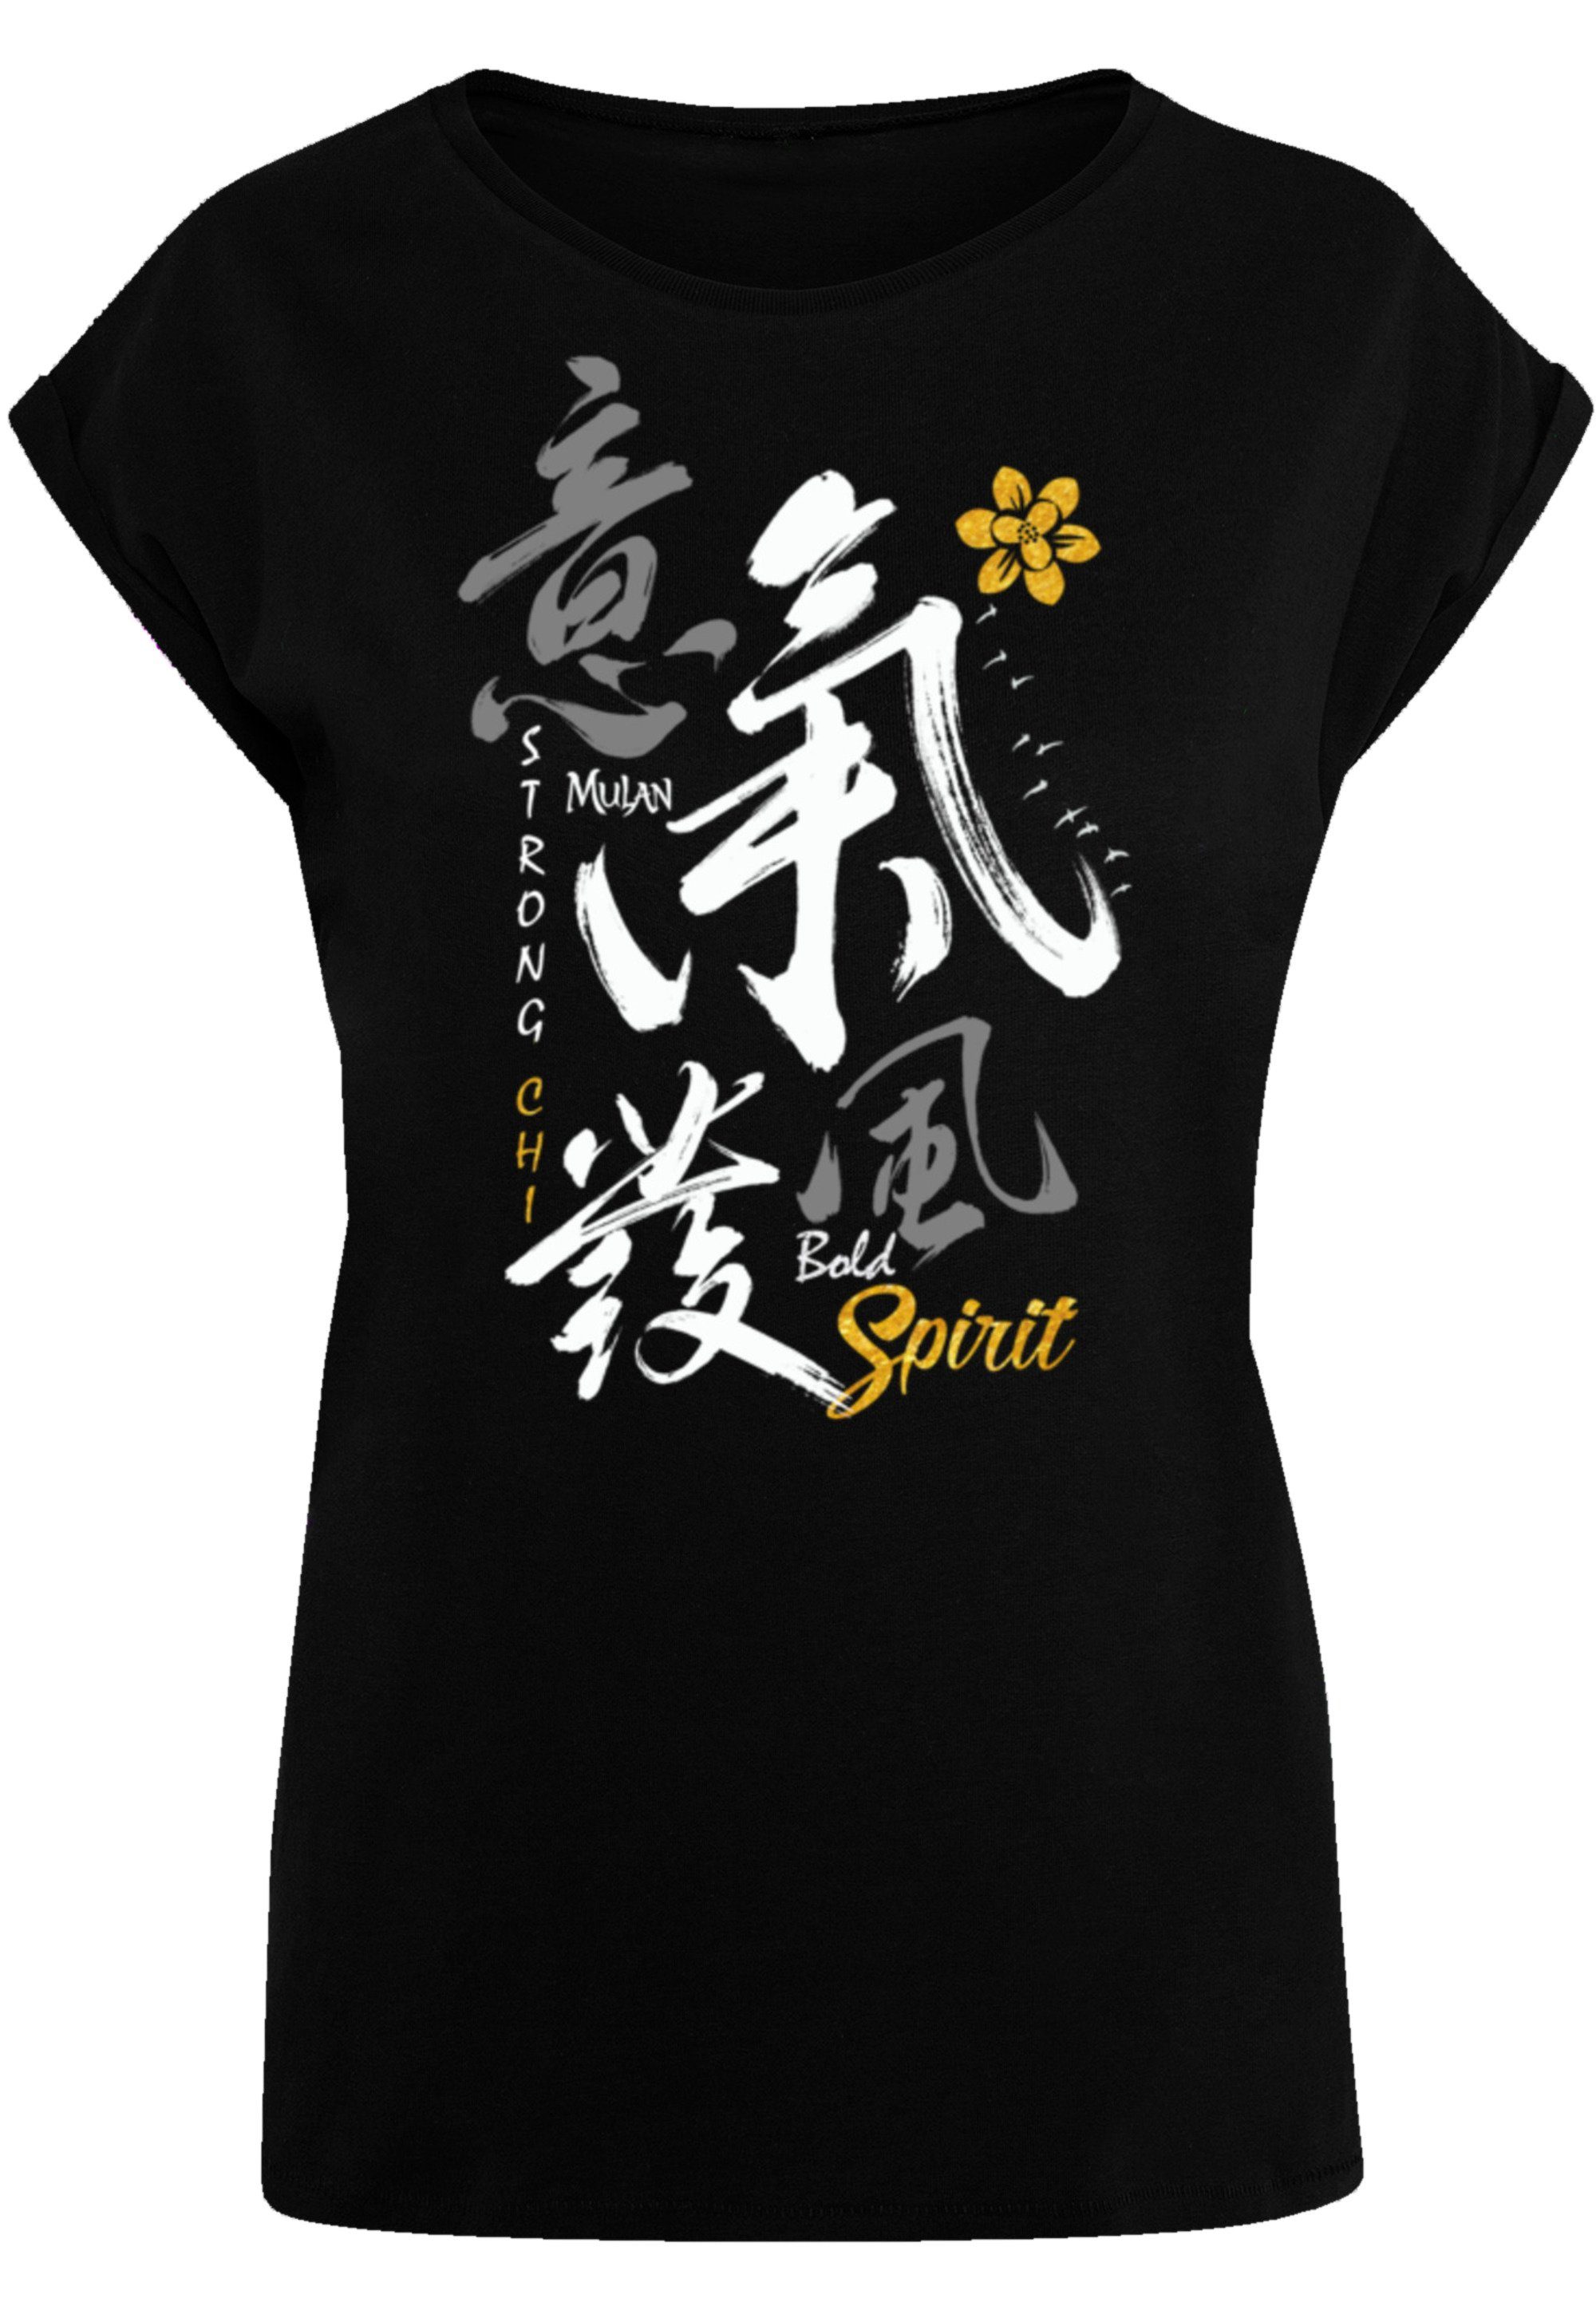 F4NT4STIC T-Shirt Disney Mulan Bold Spirit Premium Qualität, Offiziell  lizenziertes Disney T-Shirt